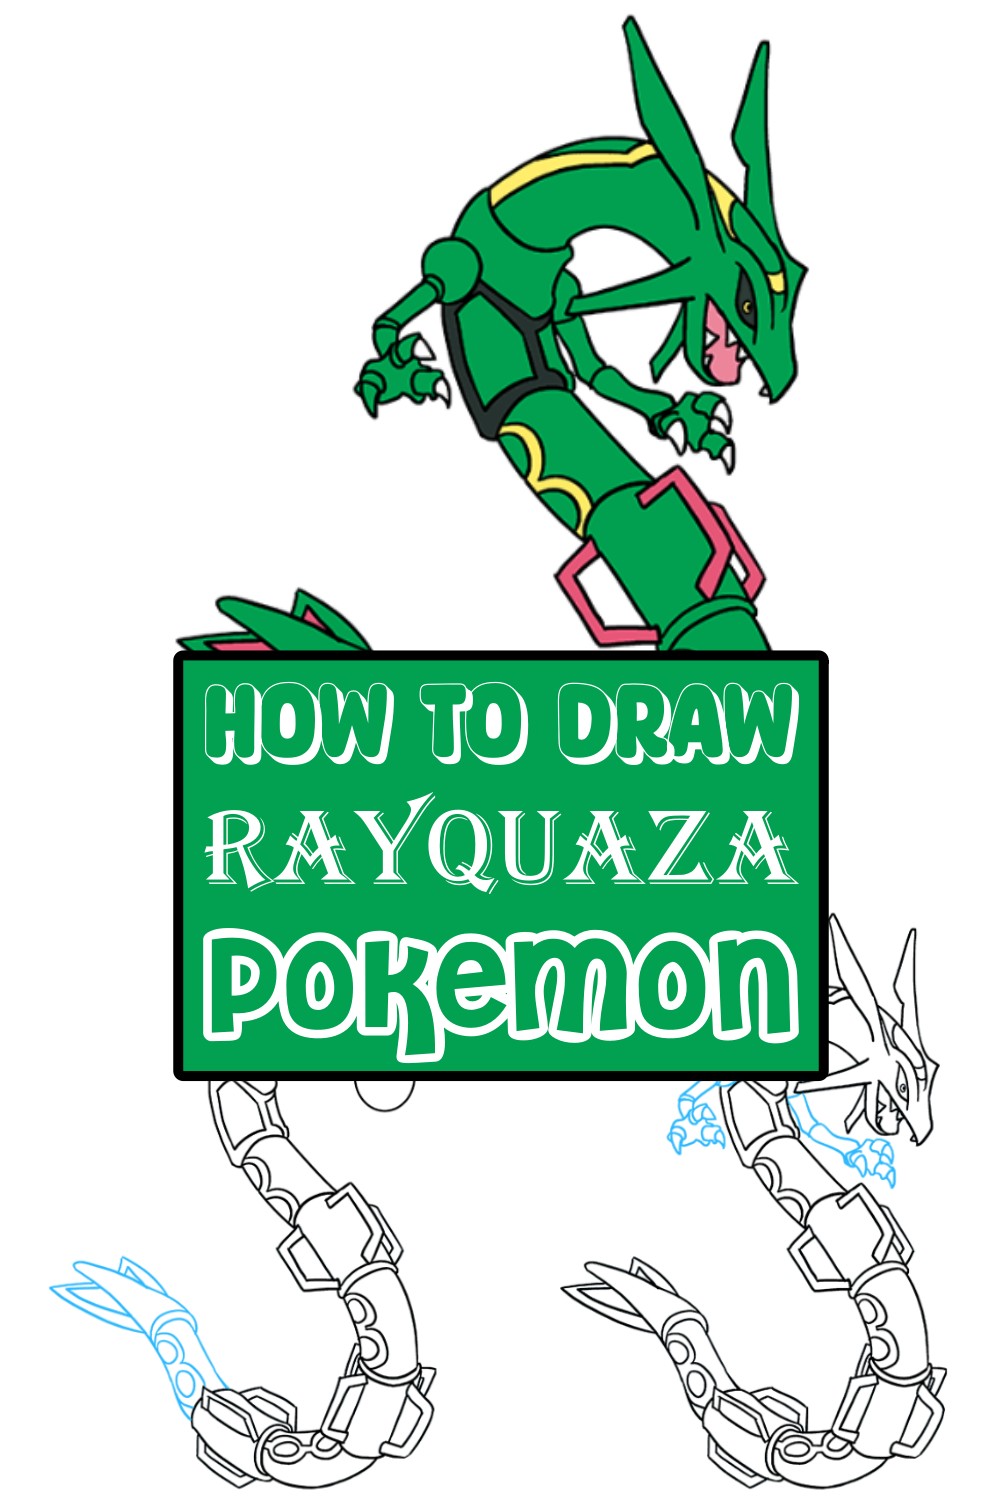 How To Draw Rayquaza Pokémon